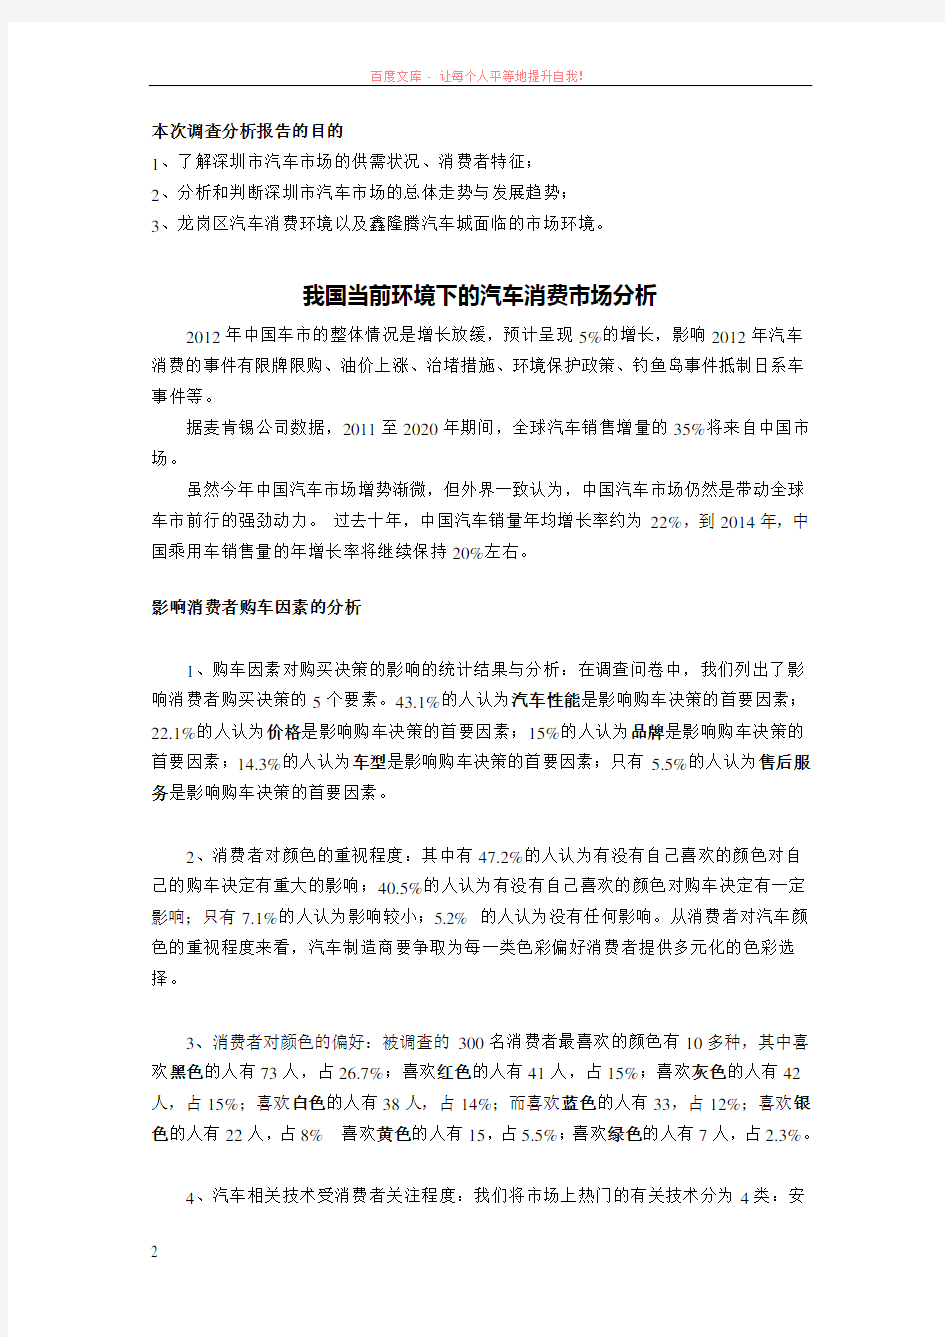 深圳市汽车消费市场调查分析报告